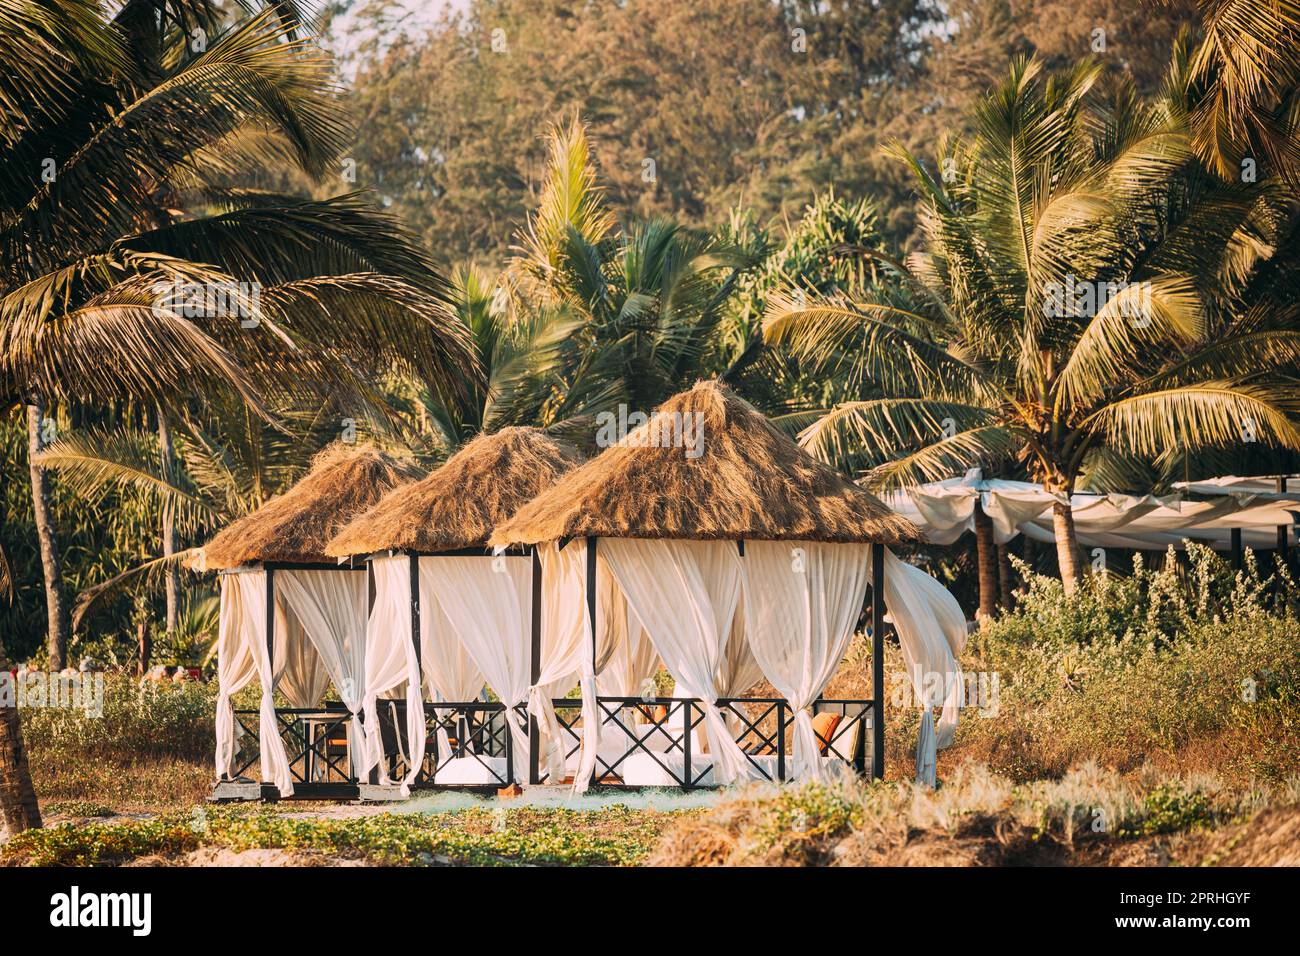 Goa, Inde. Tentes de belvédère avec toit de Strawing pour les touristes sur la plage avec tables et chaises longues à l'intérieur Banque D'Images